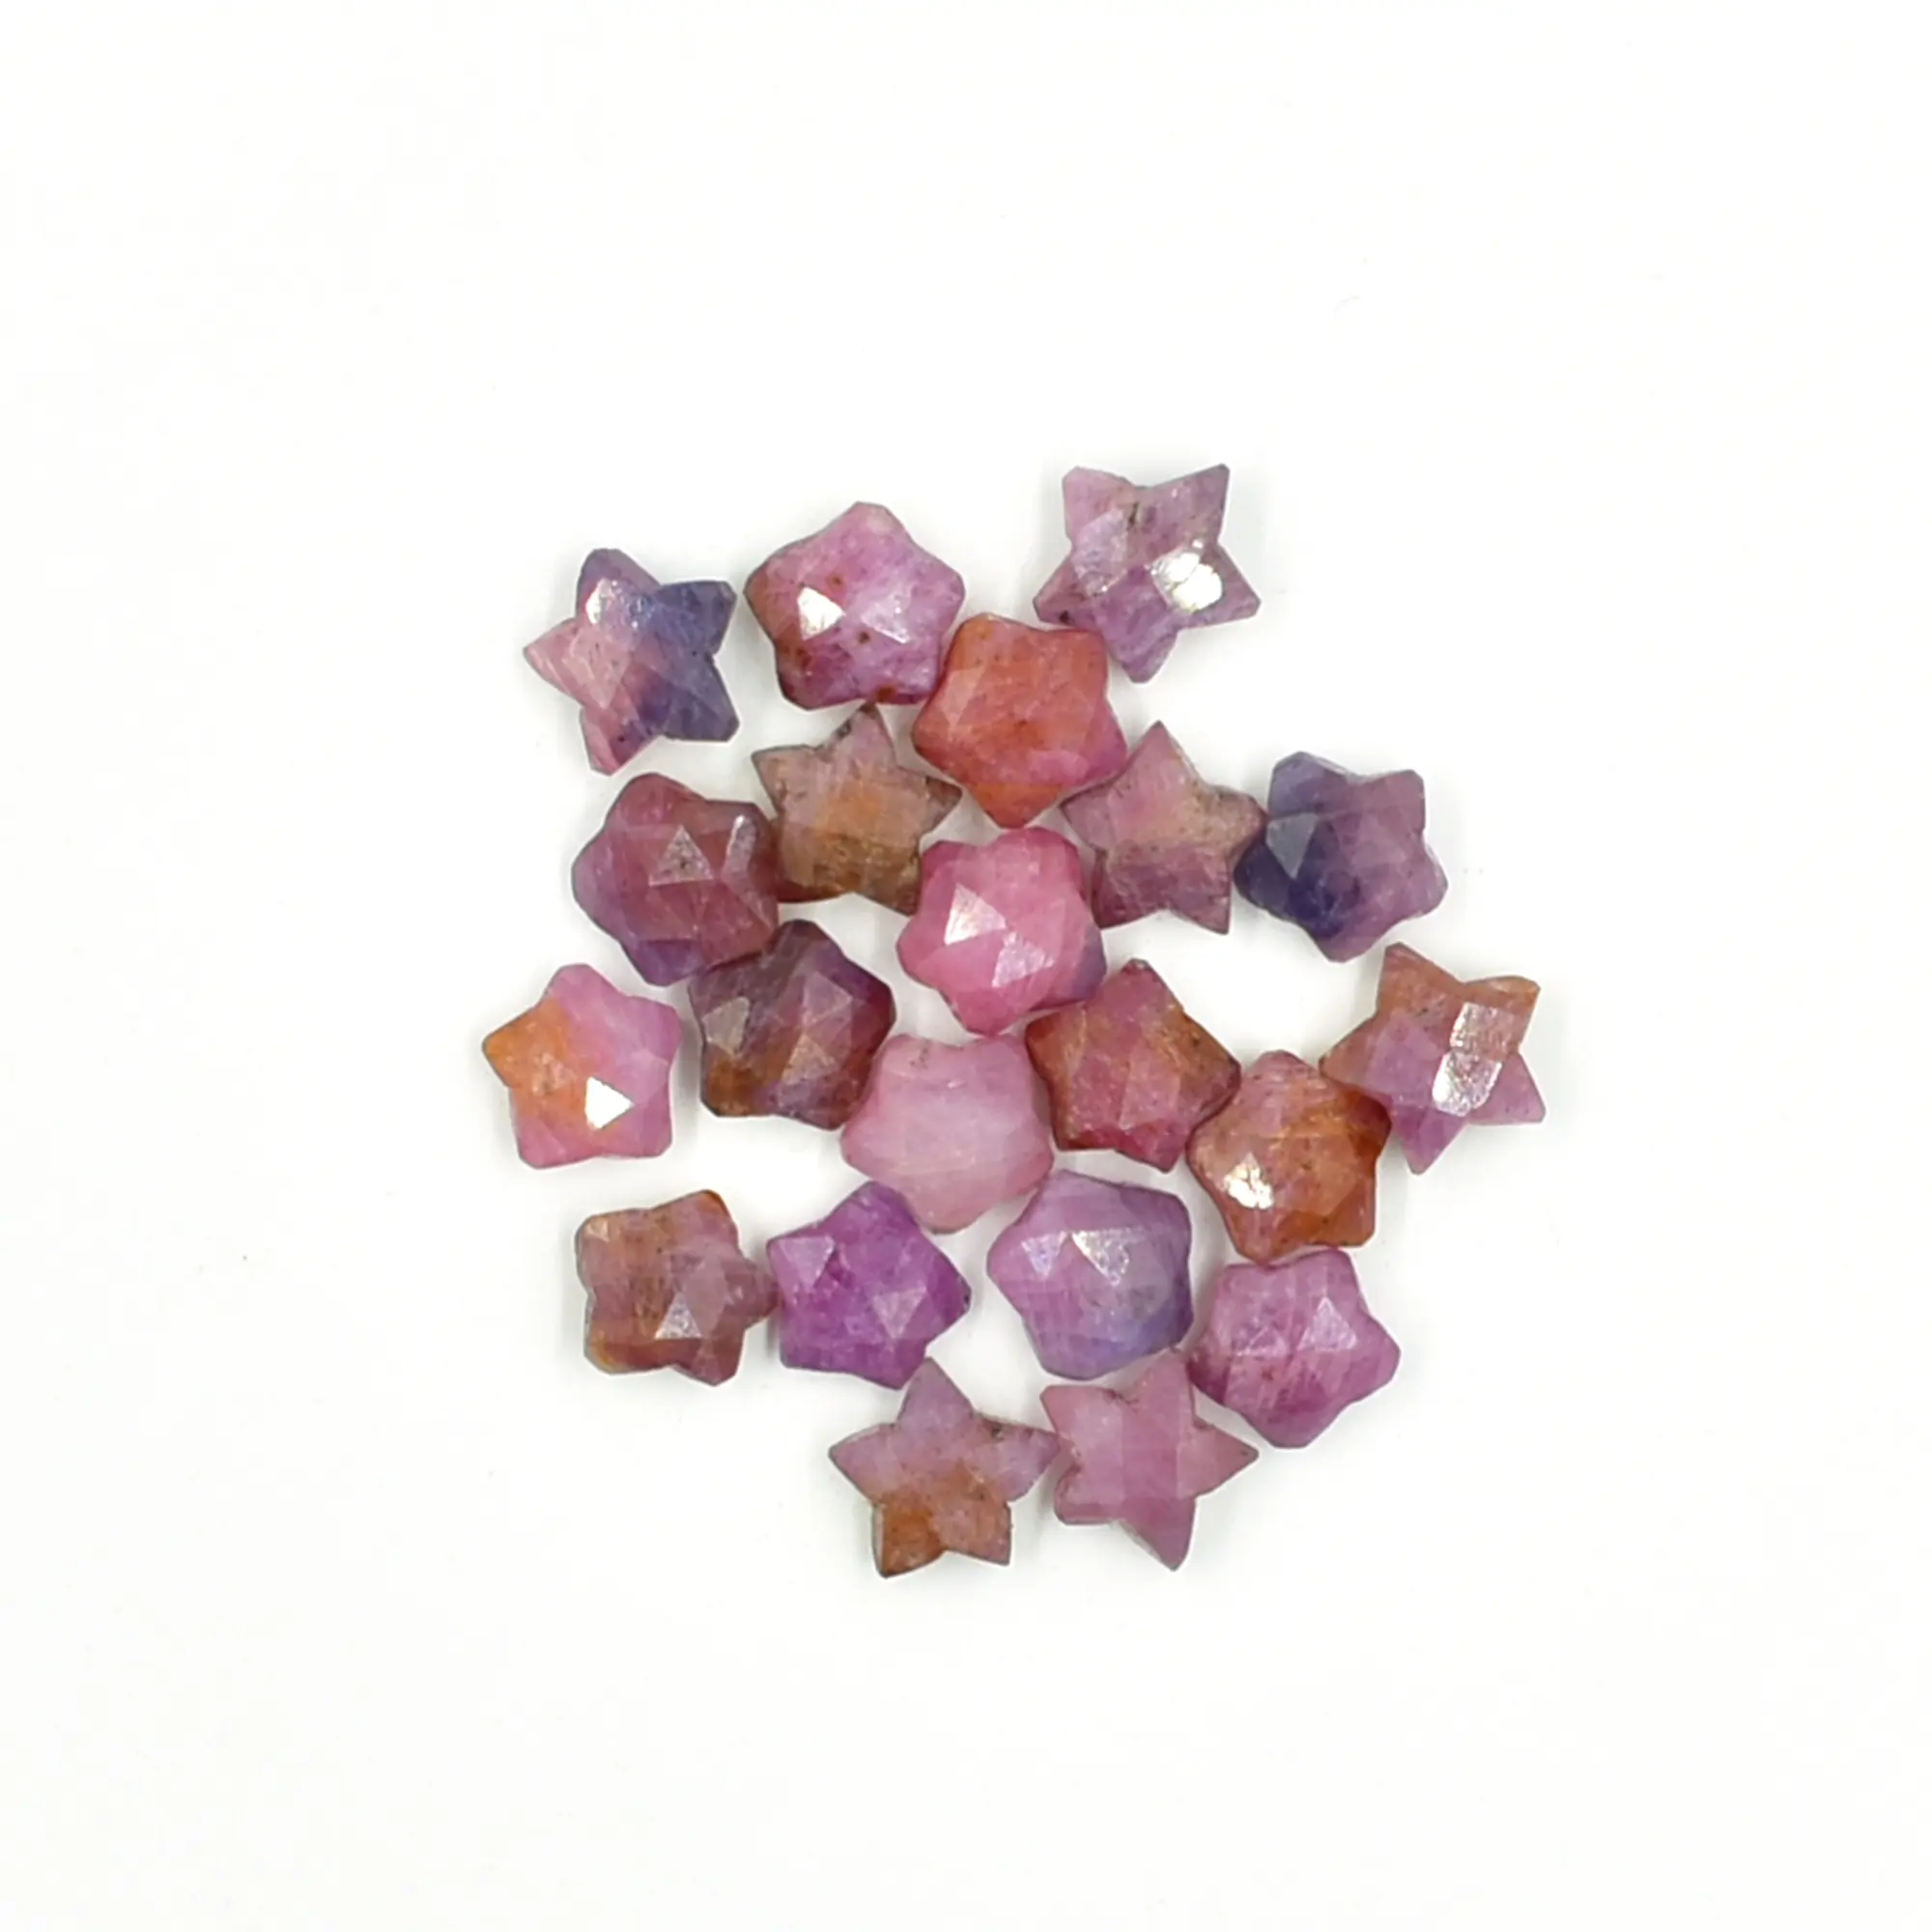 Manik-manik Ukiran Briolette Safir Merah Muda, Ukiran Batu Permata Longgar untuk Membuat Perhiasan, Penyembuhan Batu Ukiran